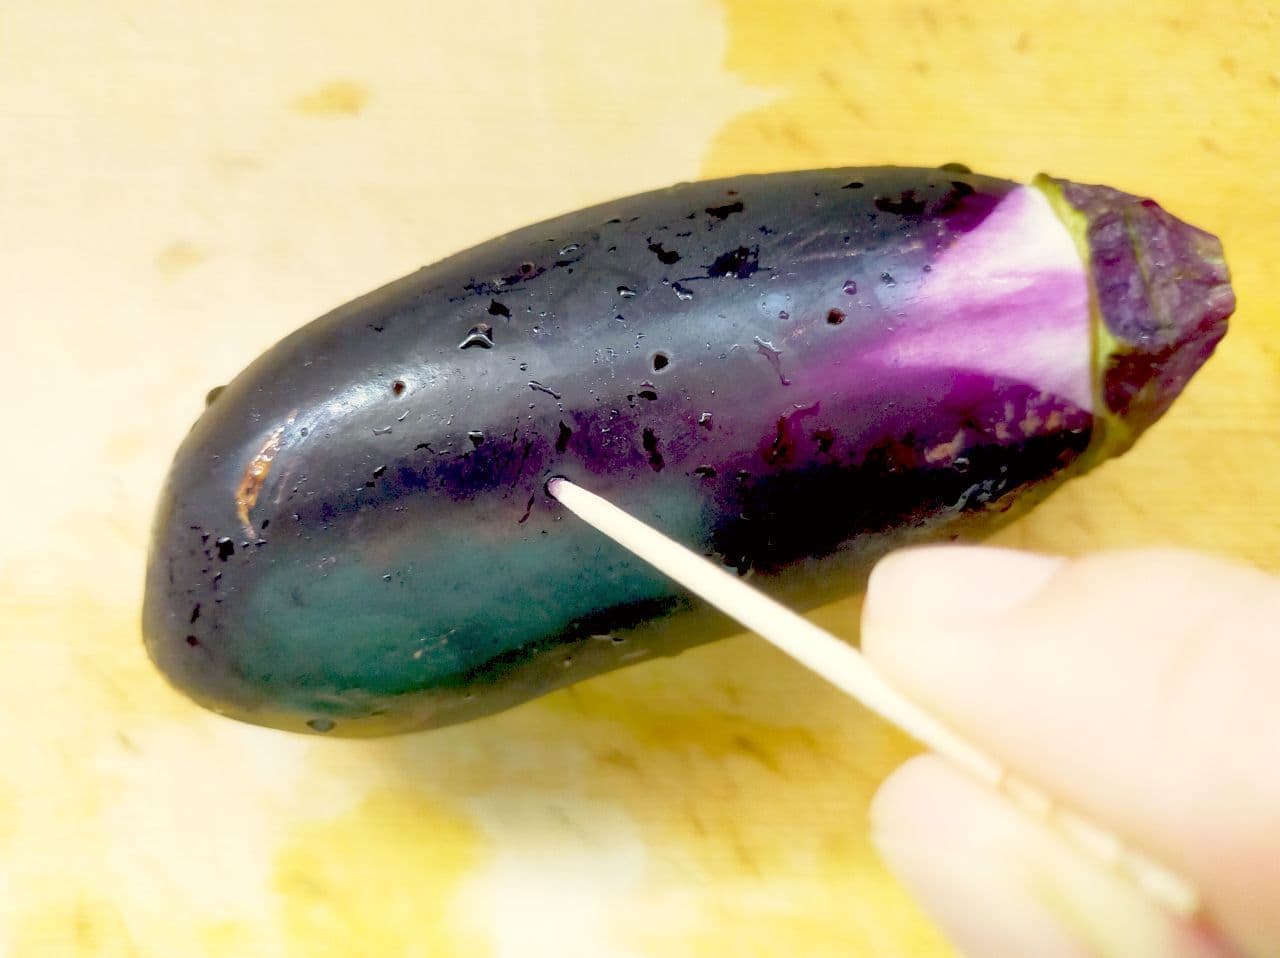 "Grilled eggplant pickled in salt" recipe